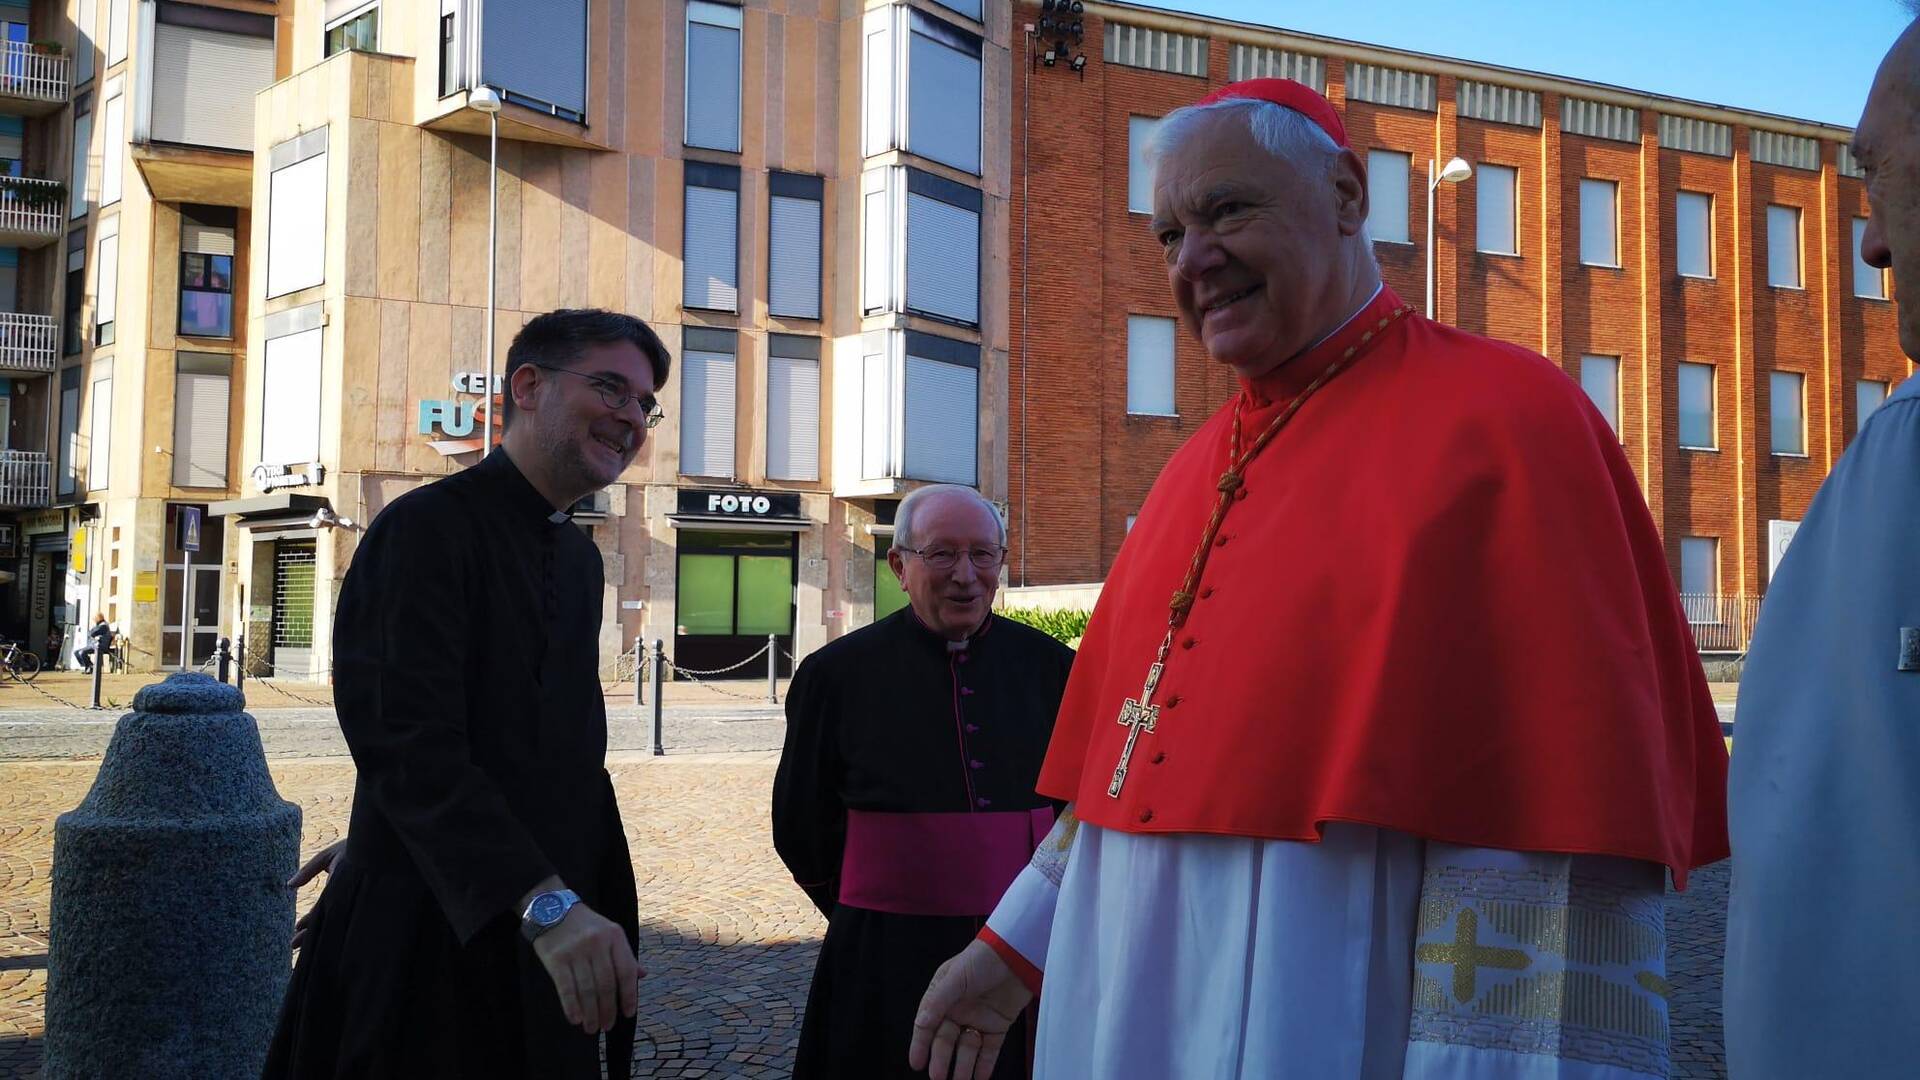 Saronno, il cardinale Gerhard Müller in Santuario: prima la messa poi la visita ai tesori artistici